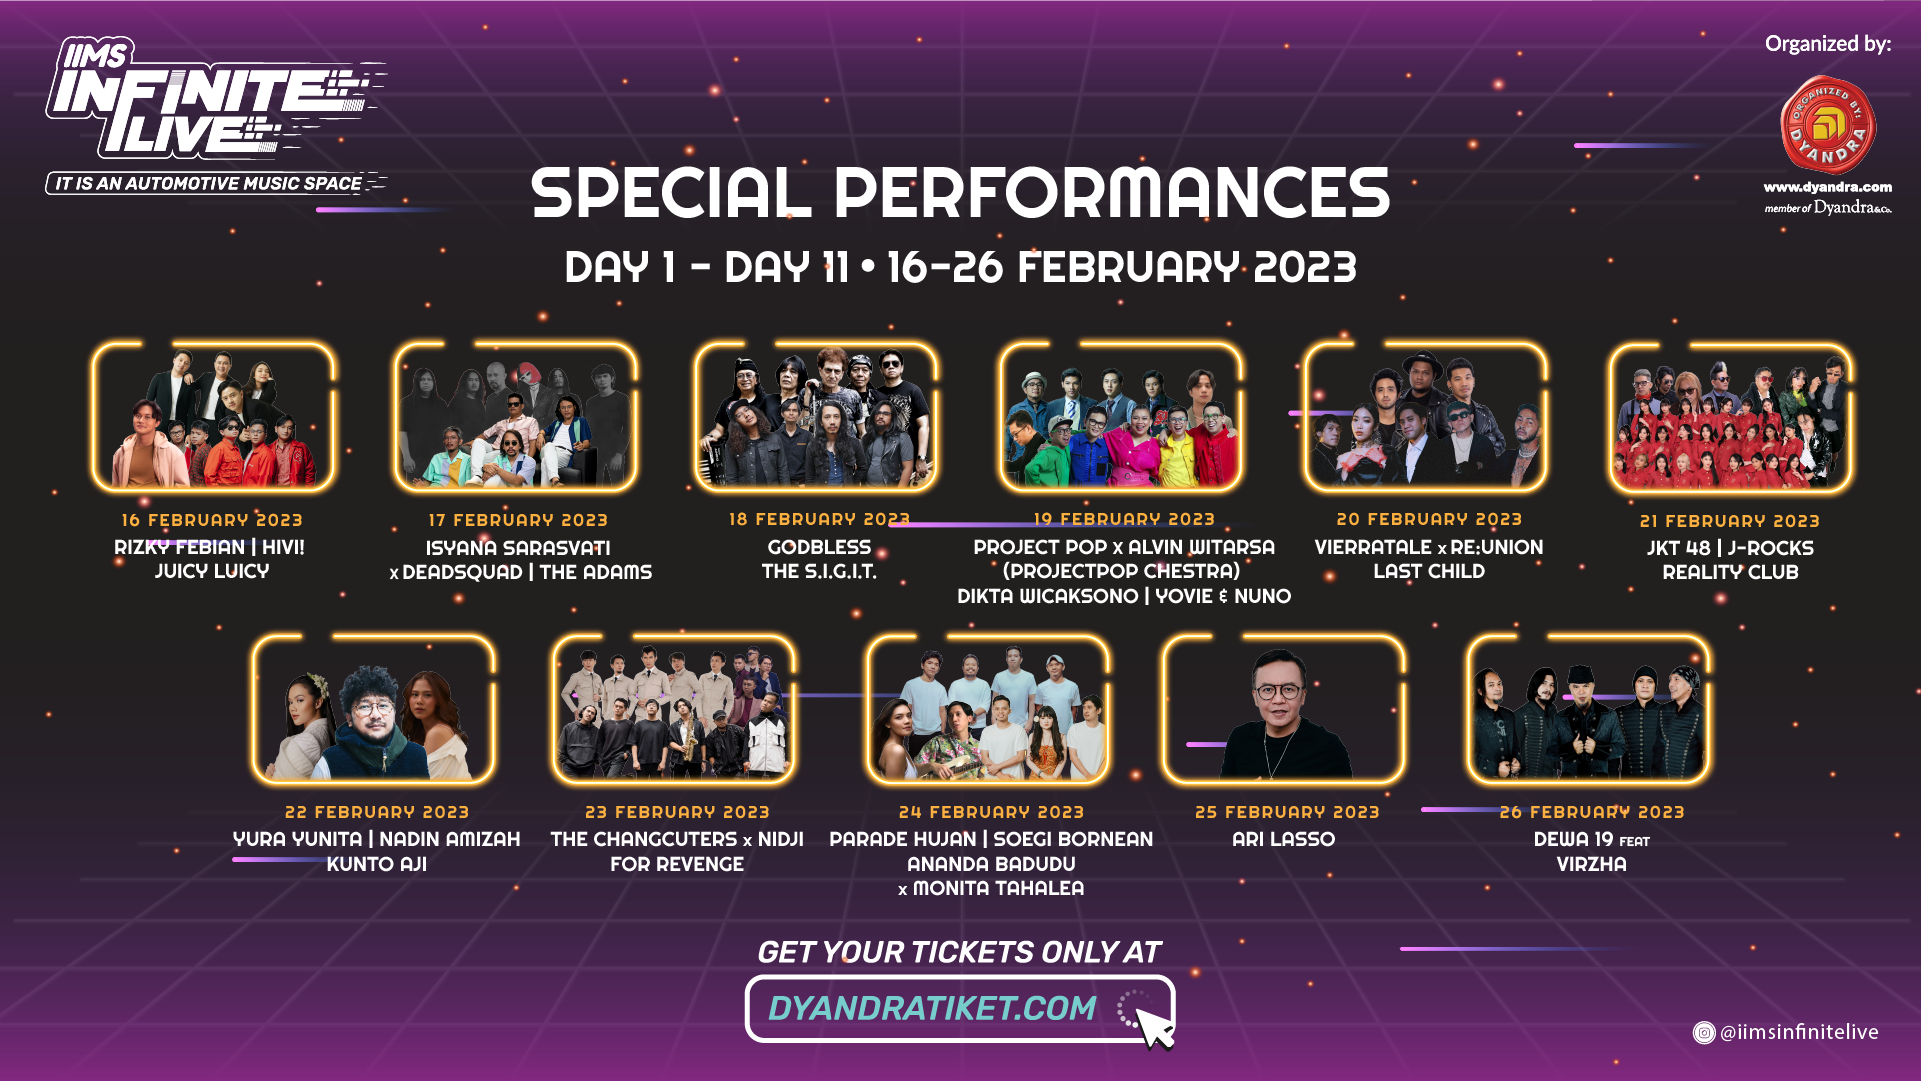 Jadwal special performance penyanyi dan grup musik di IIMS Infinite Live.